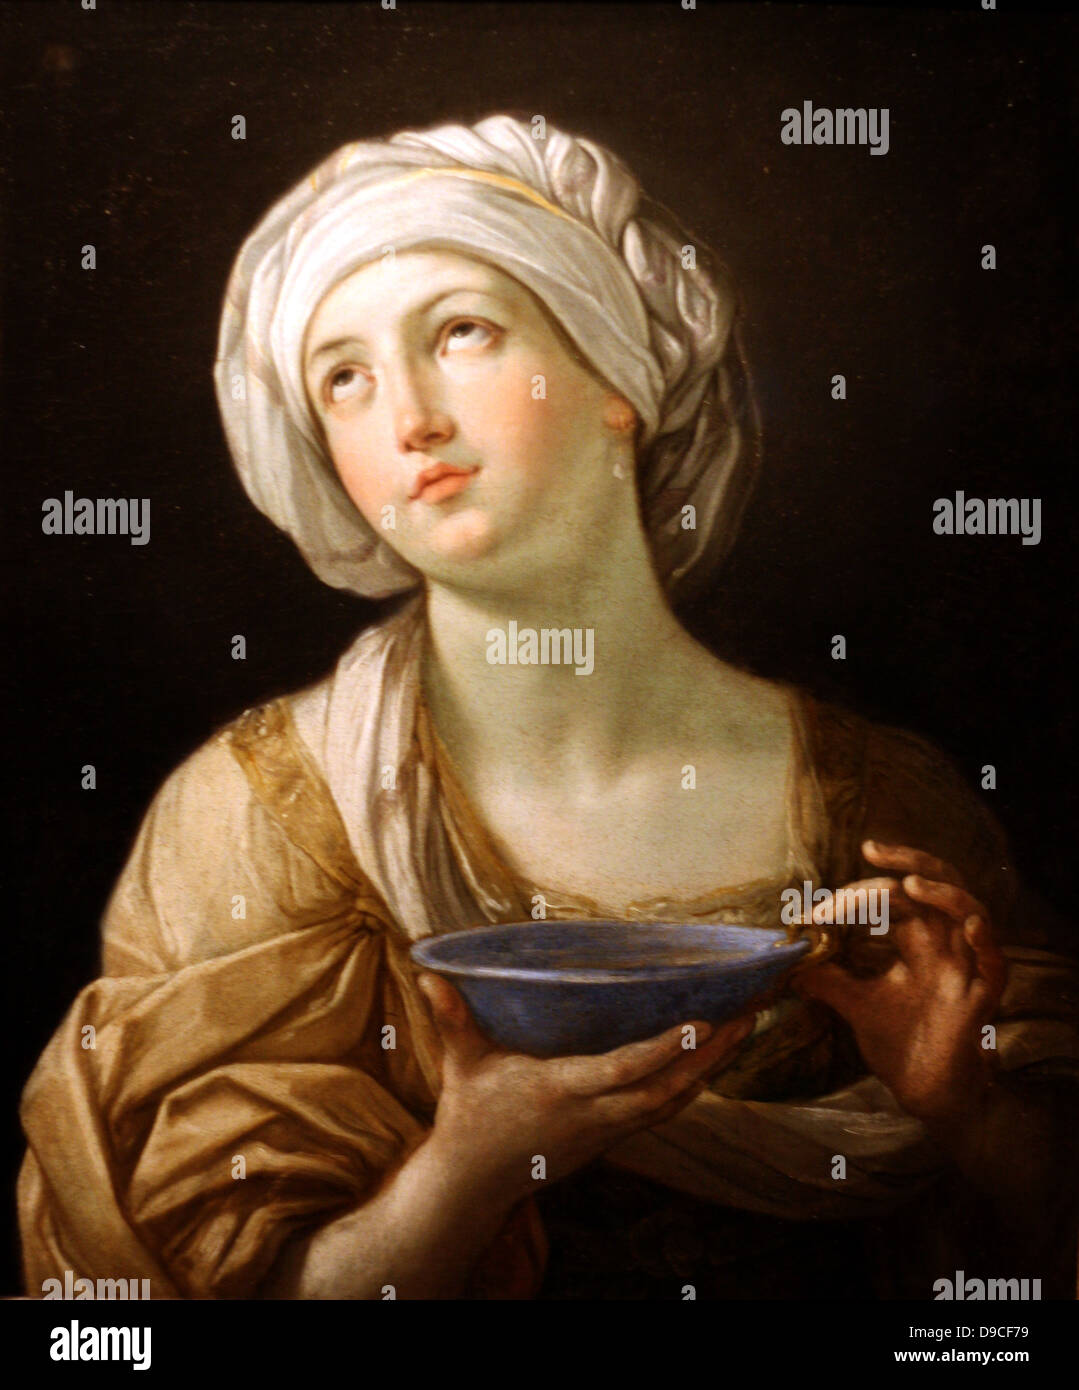 Pittura di olio da Guido Reni 1575 - 1642. Ritratto di una donna, forse Artemisia o Signora con un Lapislazzuli Bowl 1638 - 1639 Foto Stock